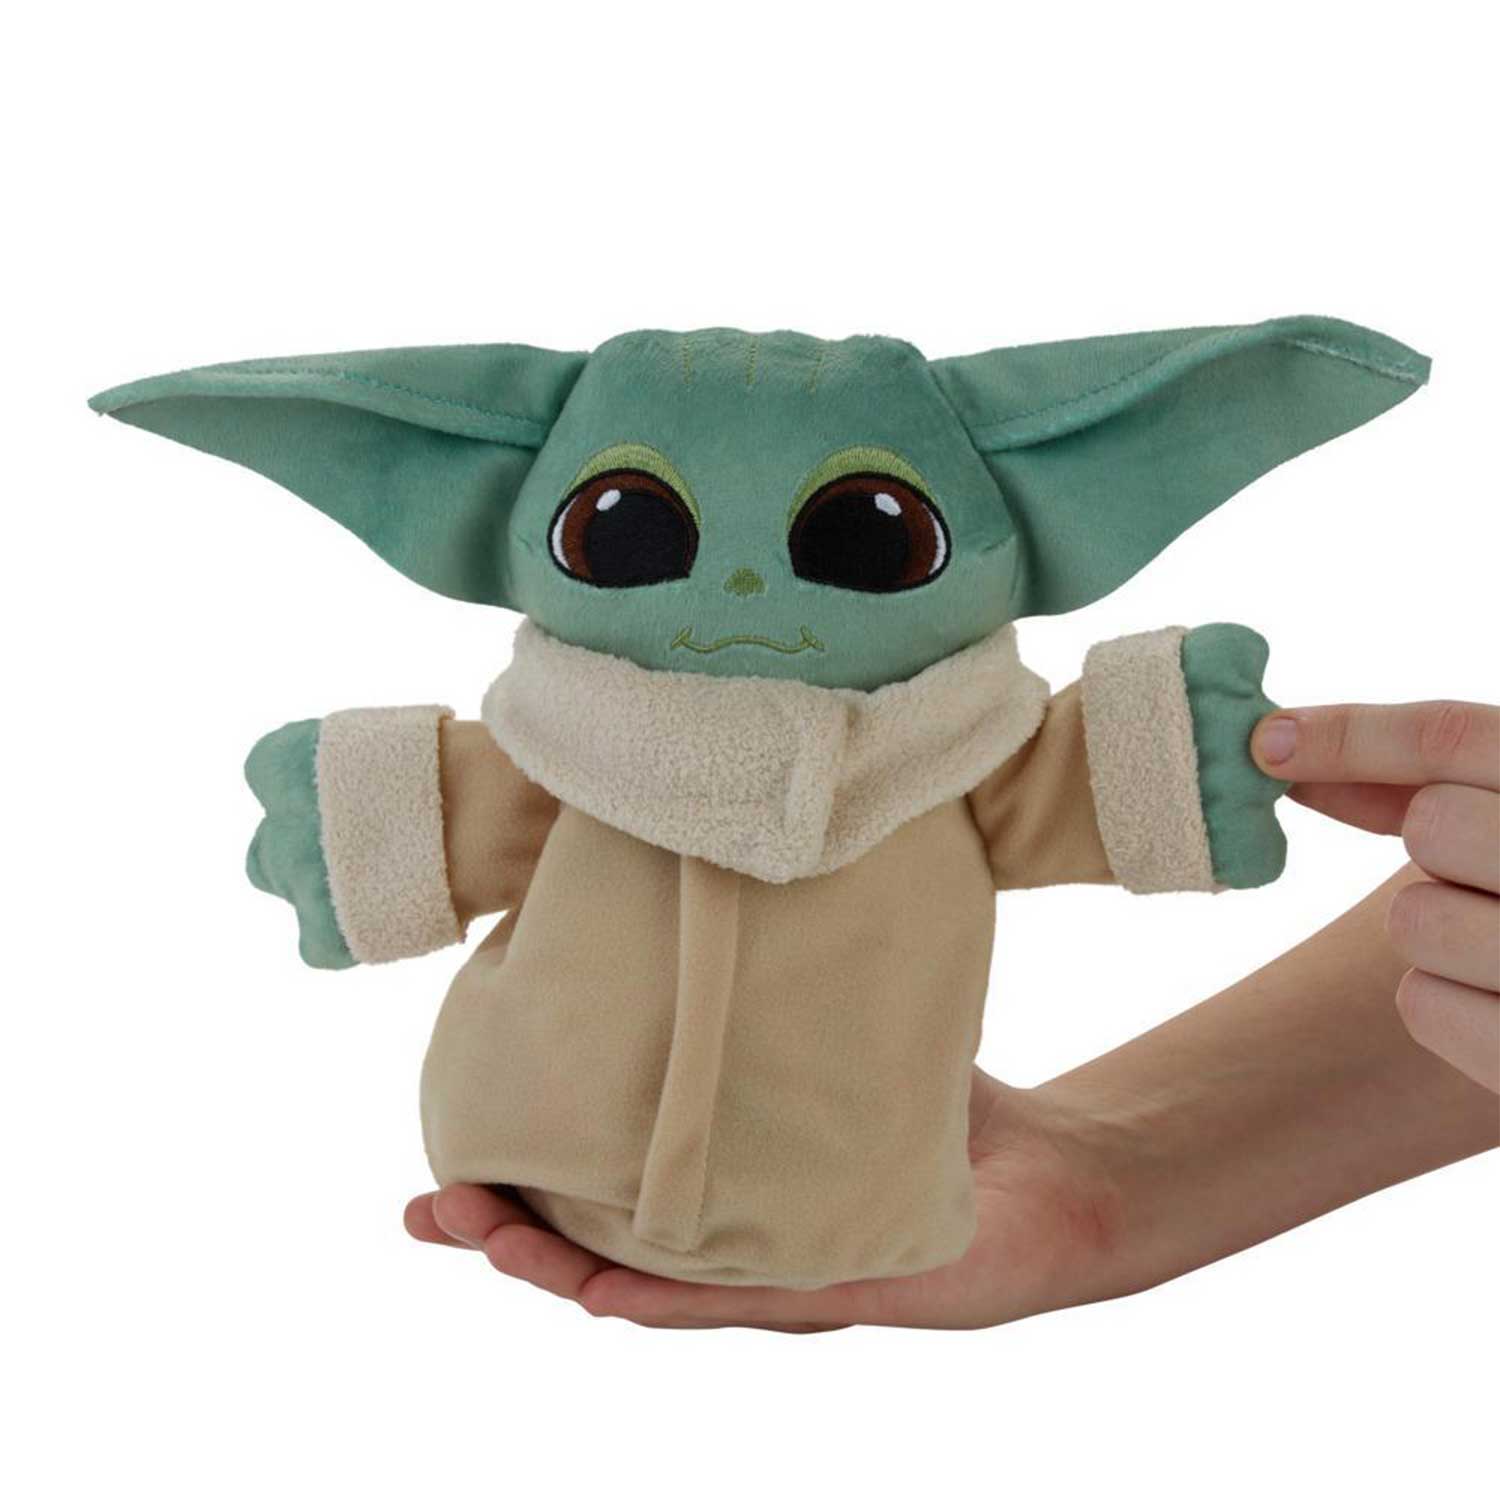 Grogu Hover Pram Costume for Toddlers – Star Wars: The Mandalorian